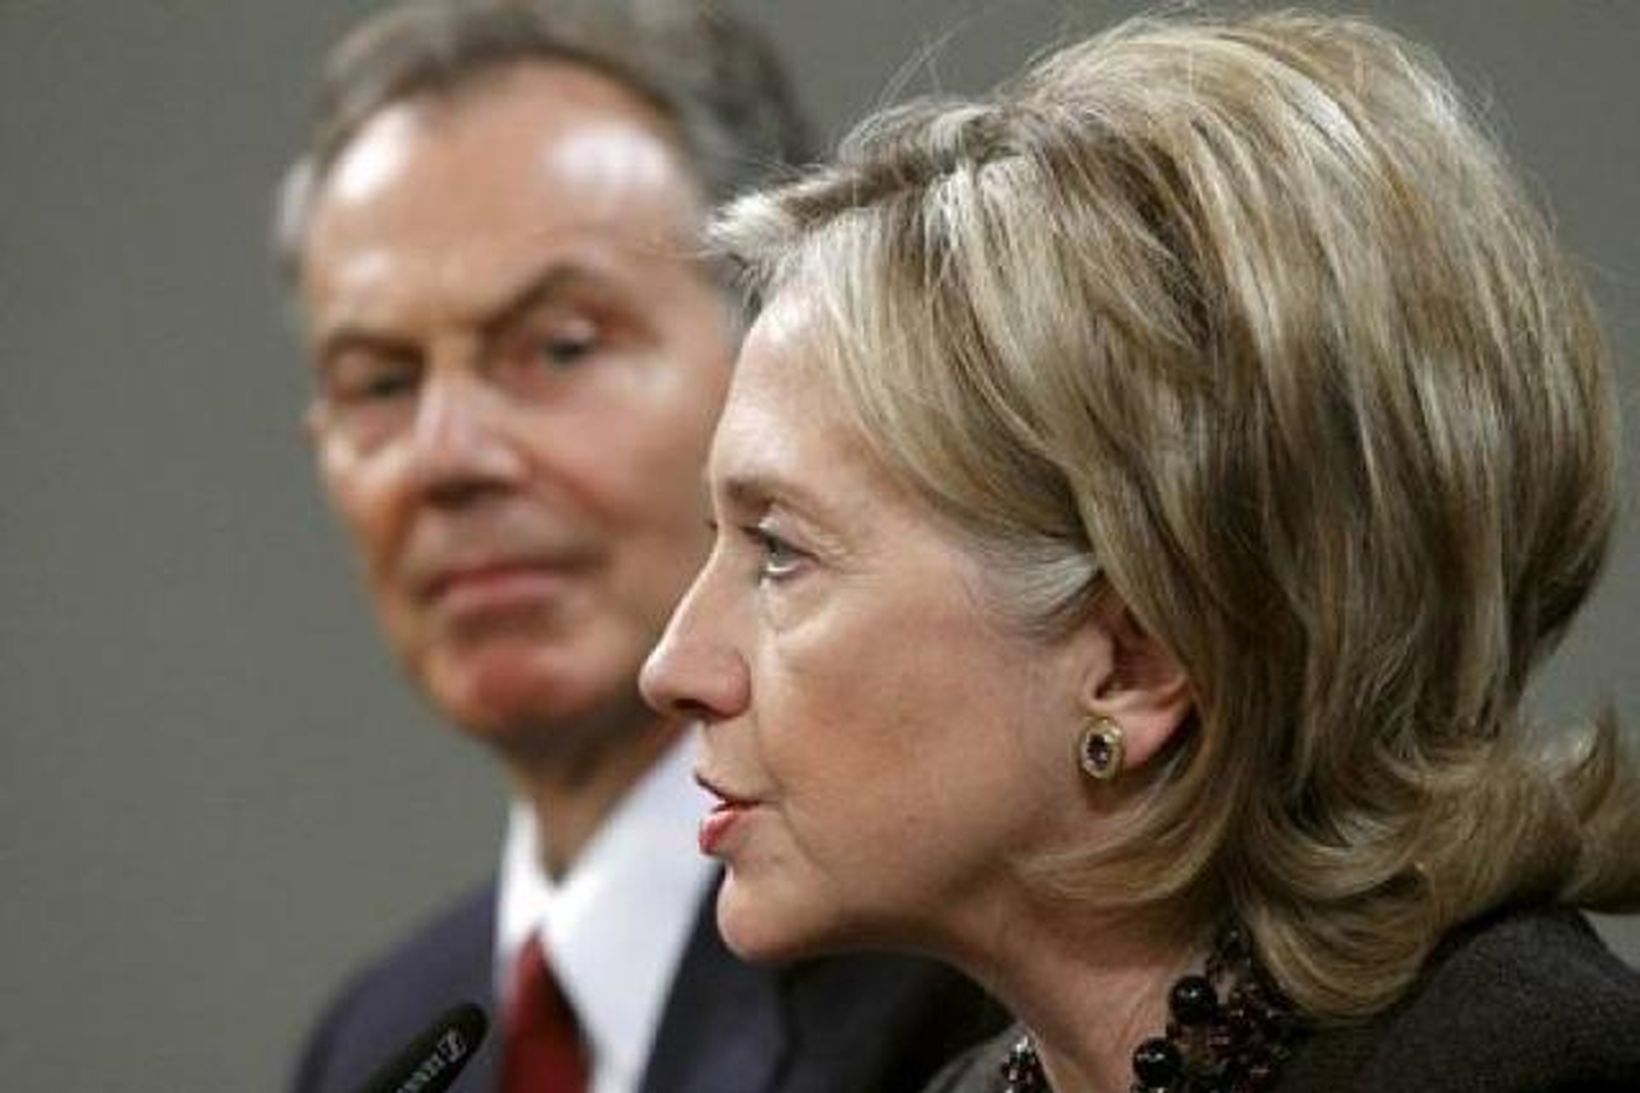 Tony Blair, sérlegur sendimaður ríkjakvartettsins, og Hillary Clinton, utanríkisráðherra Bandaríkjunum, …